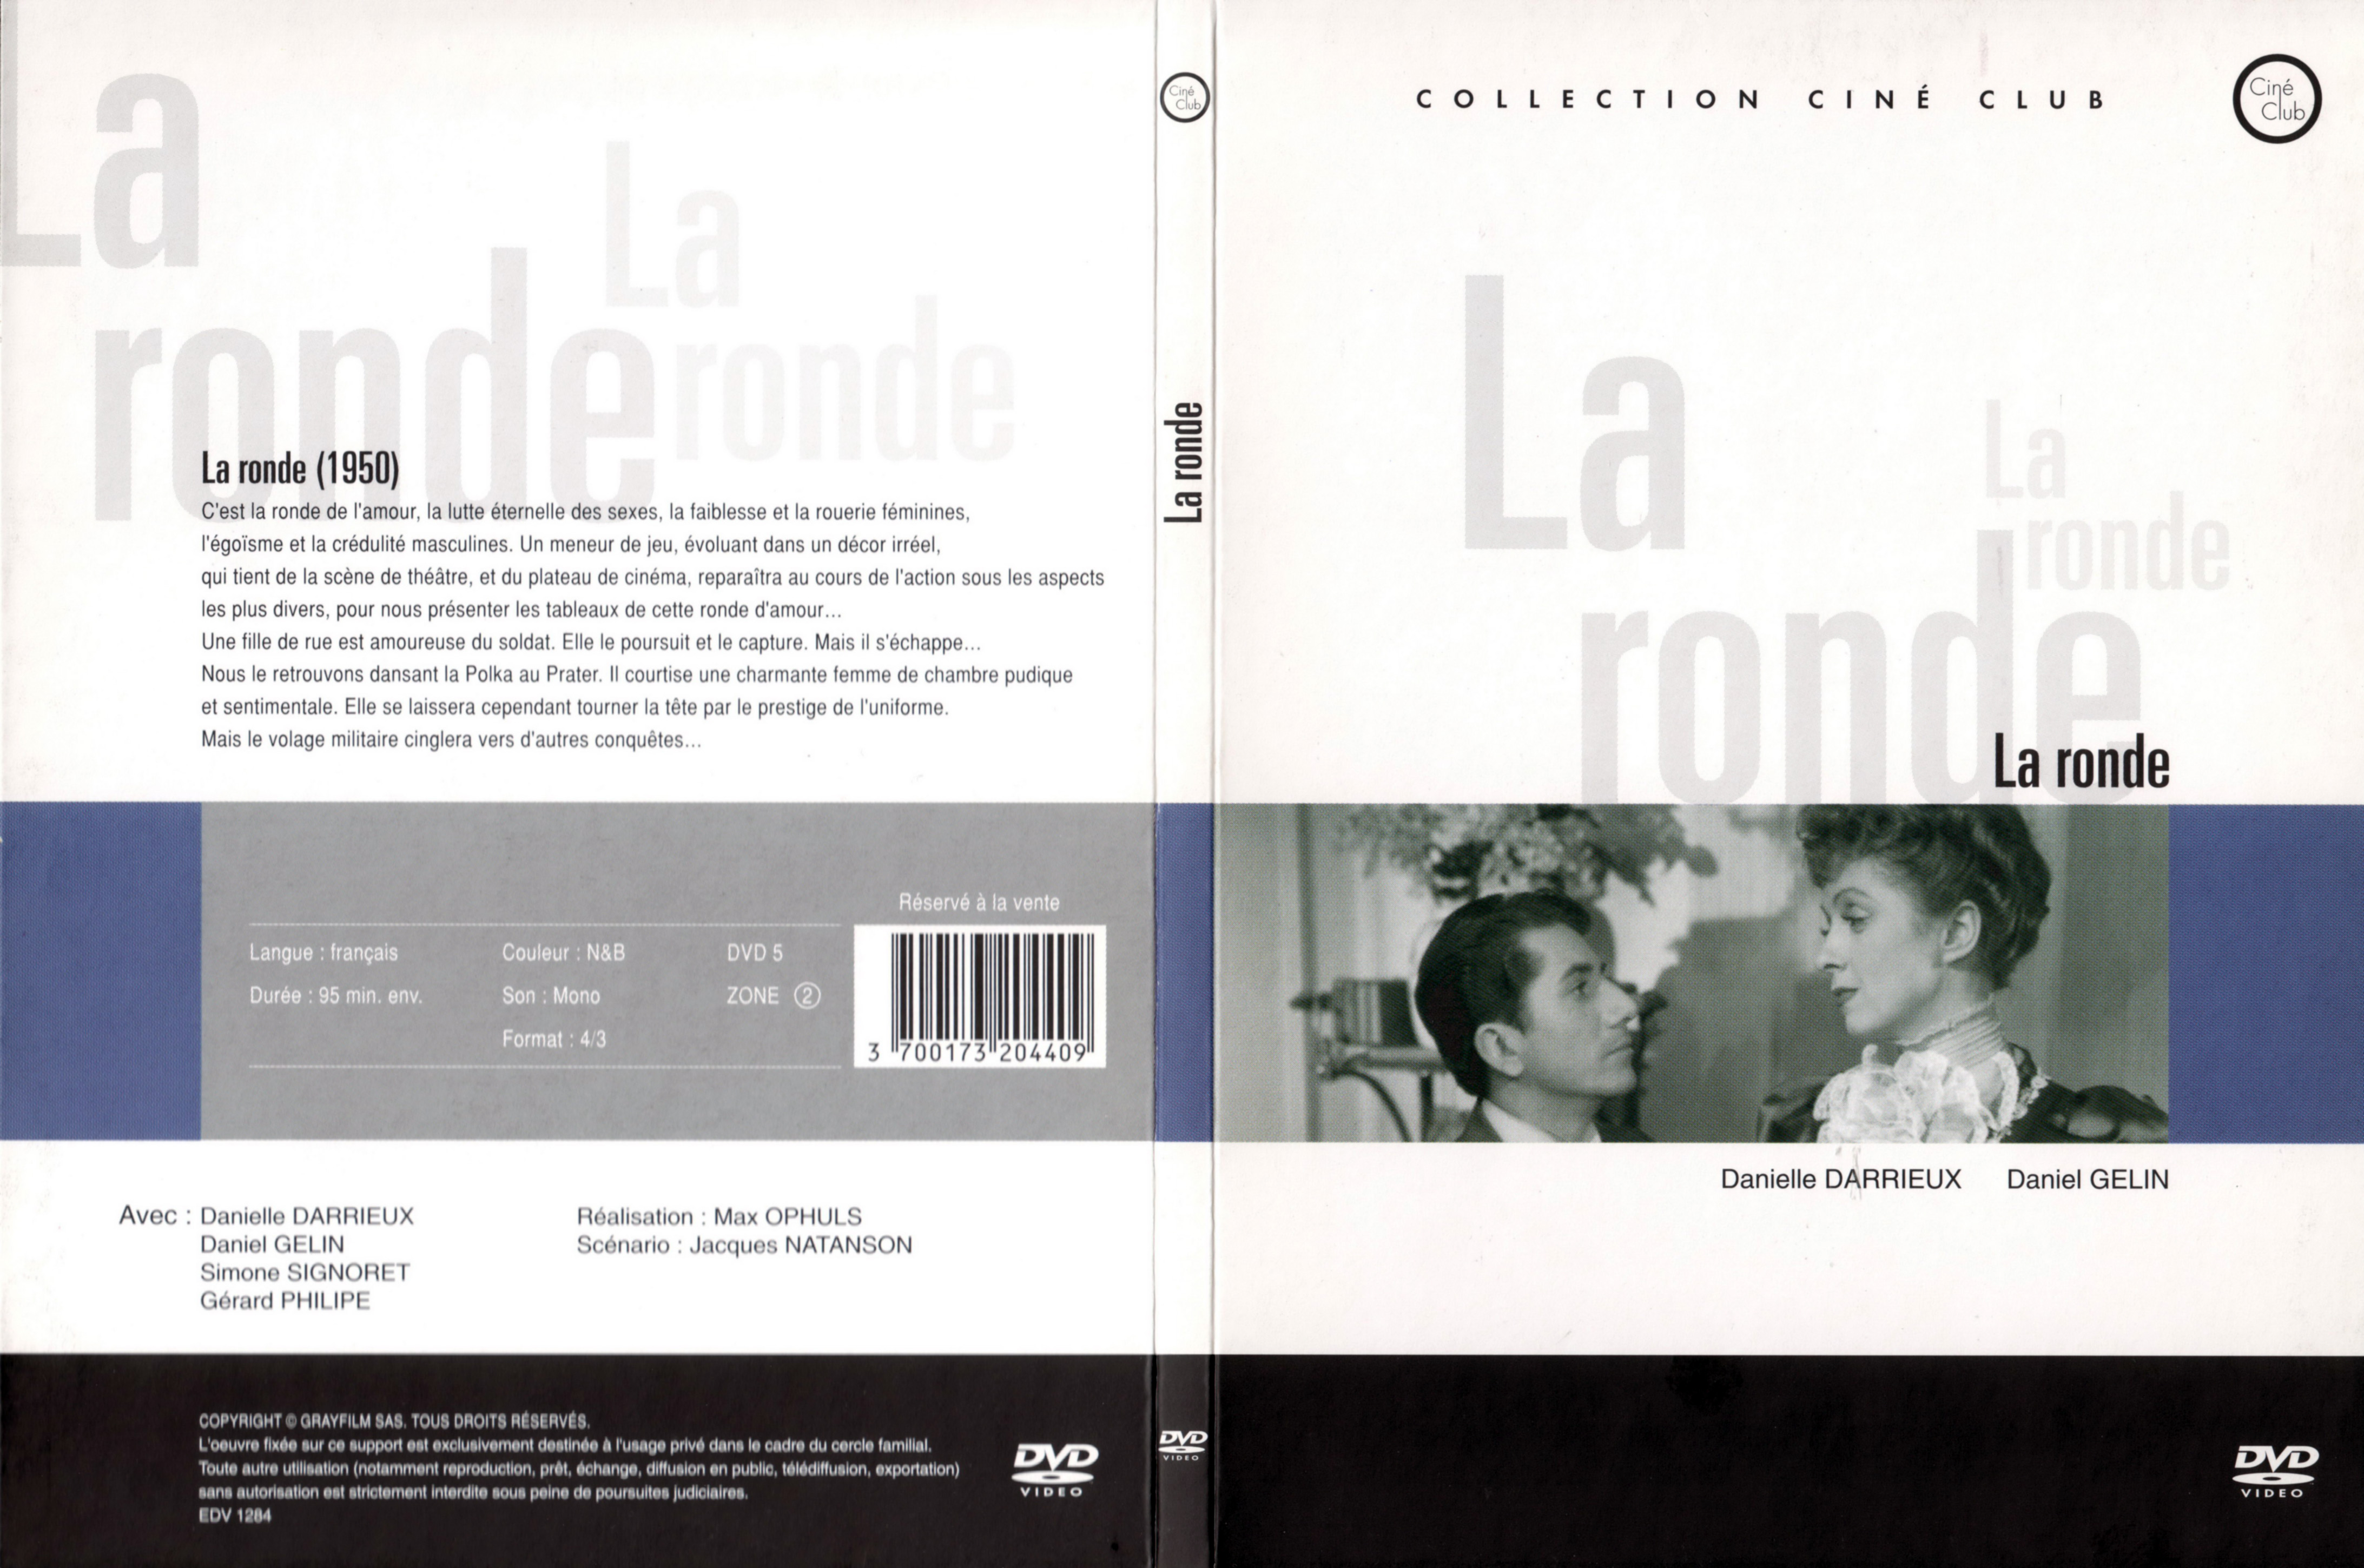 Jaquette DVD La ronde